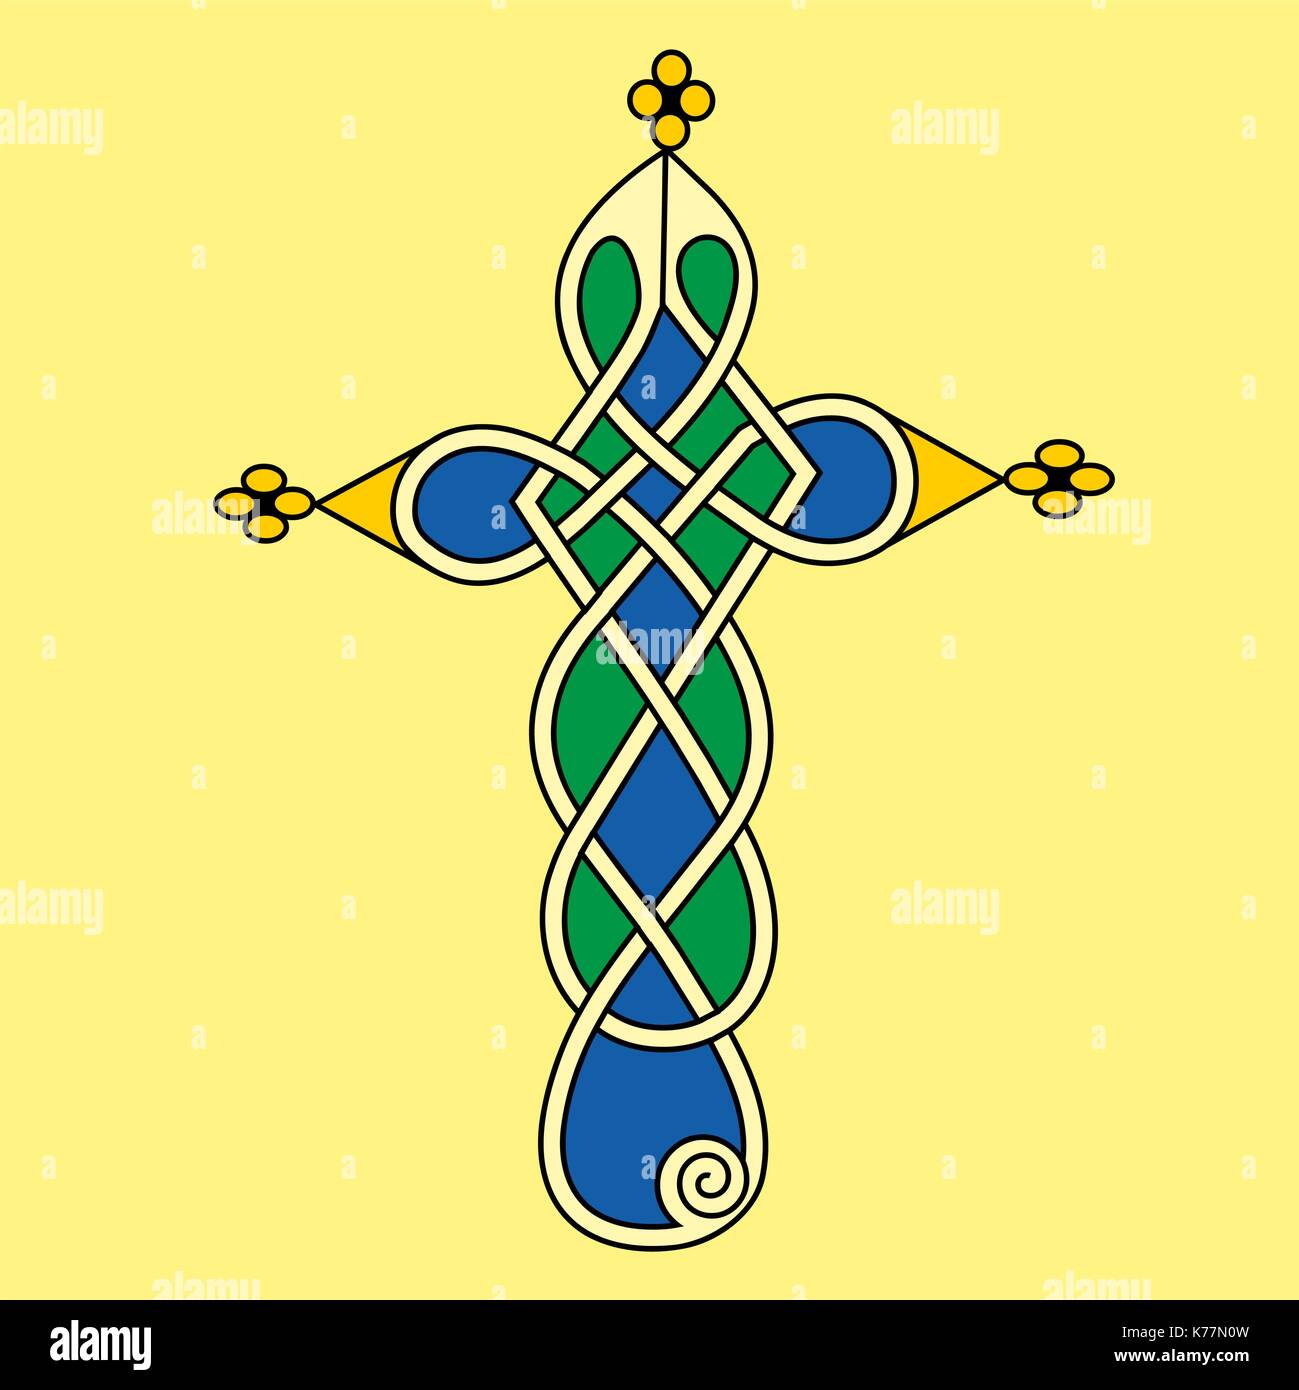 Dekorative Kreuz im keltischen Stil in geometrische Form wie eine Zeichnung in den antiken mittelalterlichen Bilderhandschrift Stock Vektor